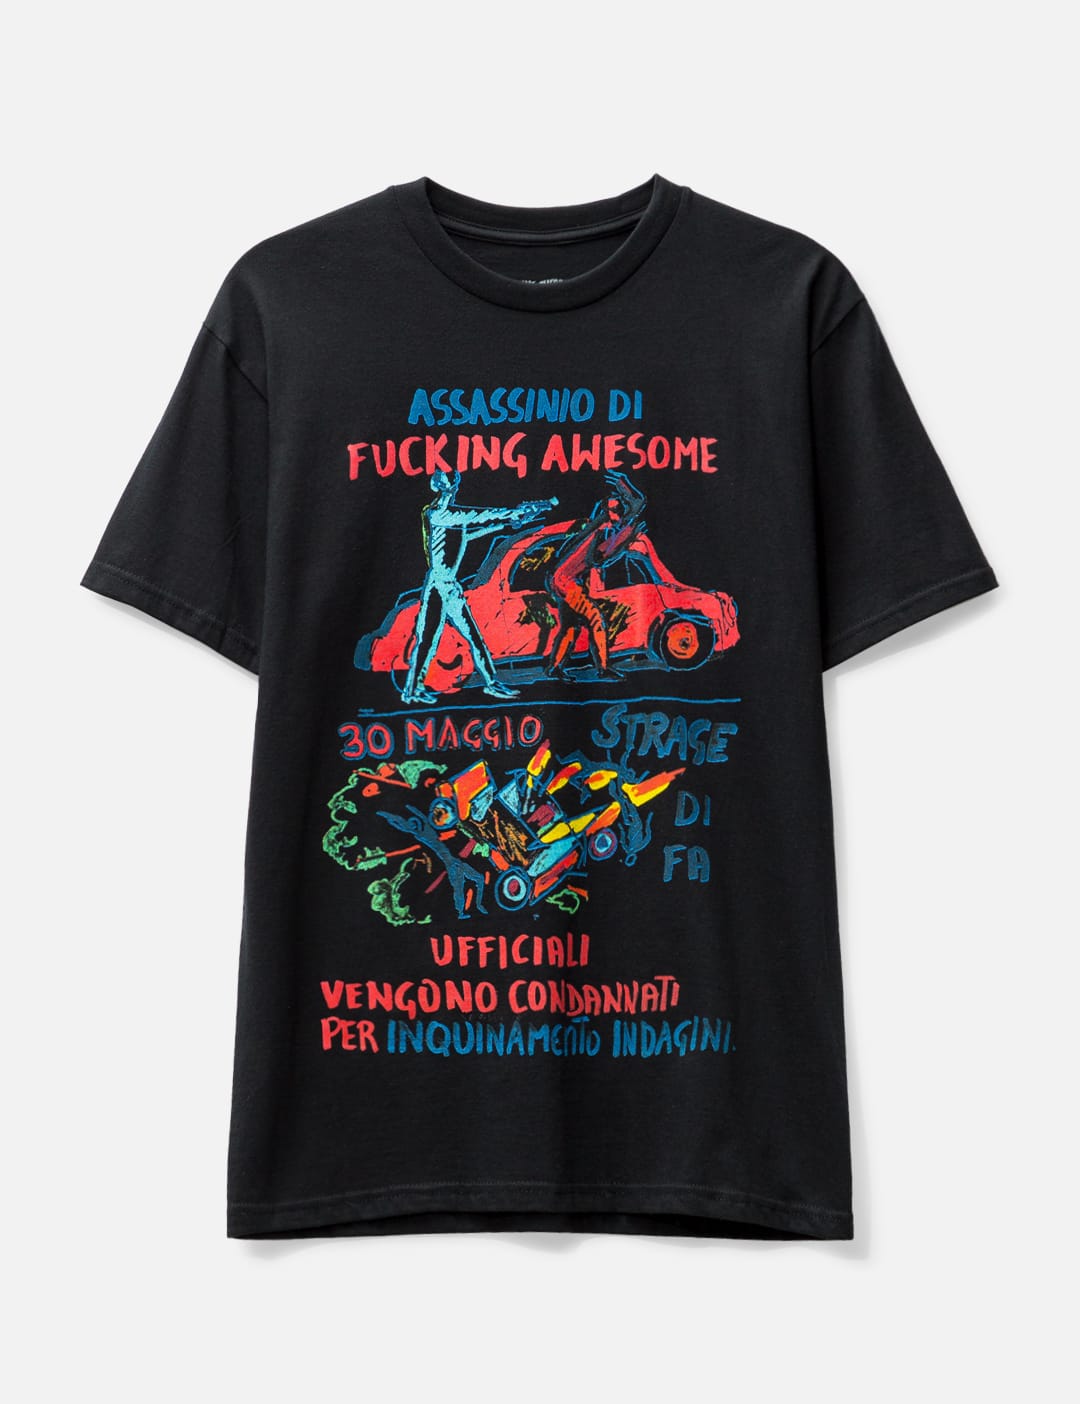 Fucking Awesome - カー エクスプロージョン Tシャツ | HBX - ハイプ ...